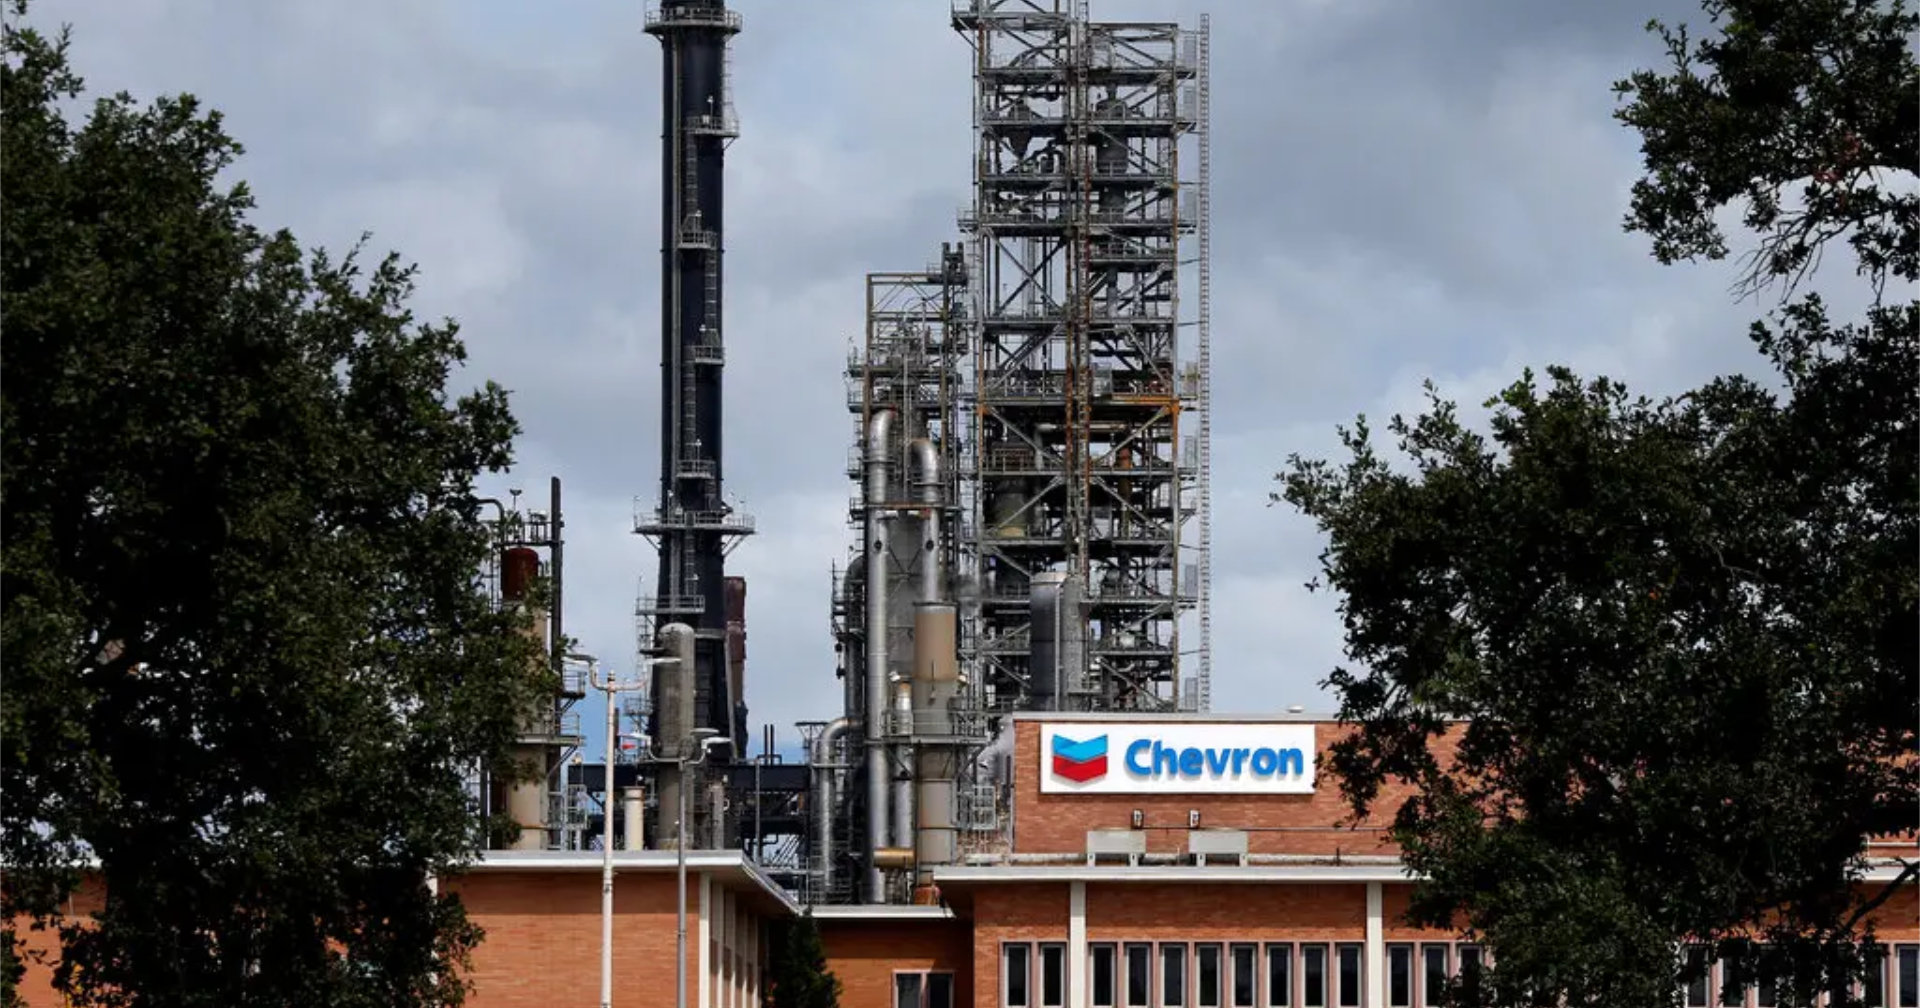 Chevron ถอนตัวออกจากเมียนมา พร้อมประณามการละเมิดสิทธิมนุษยชน